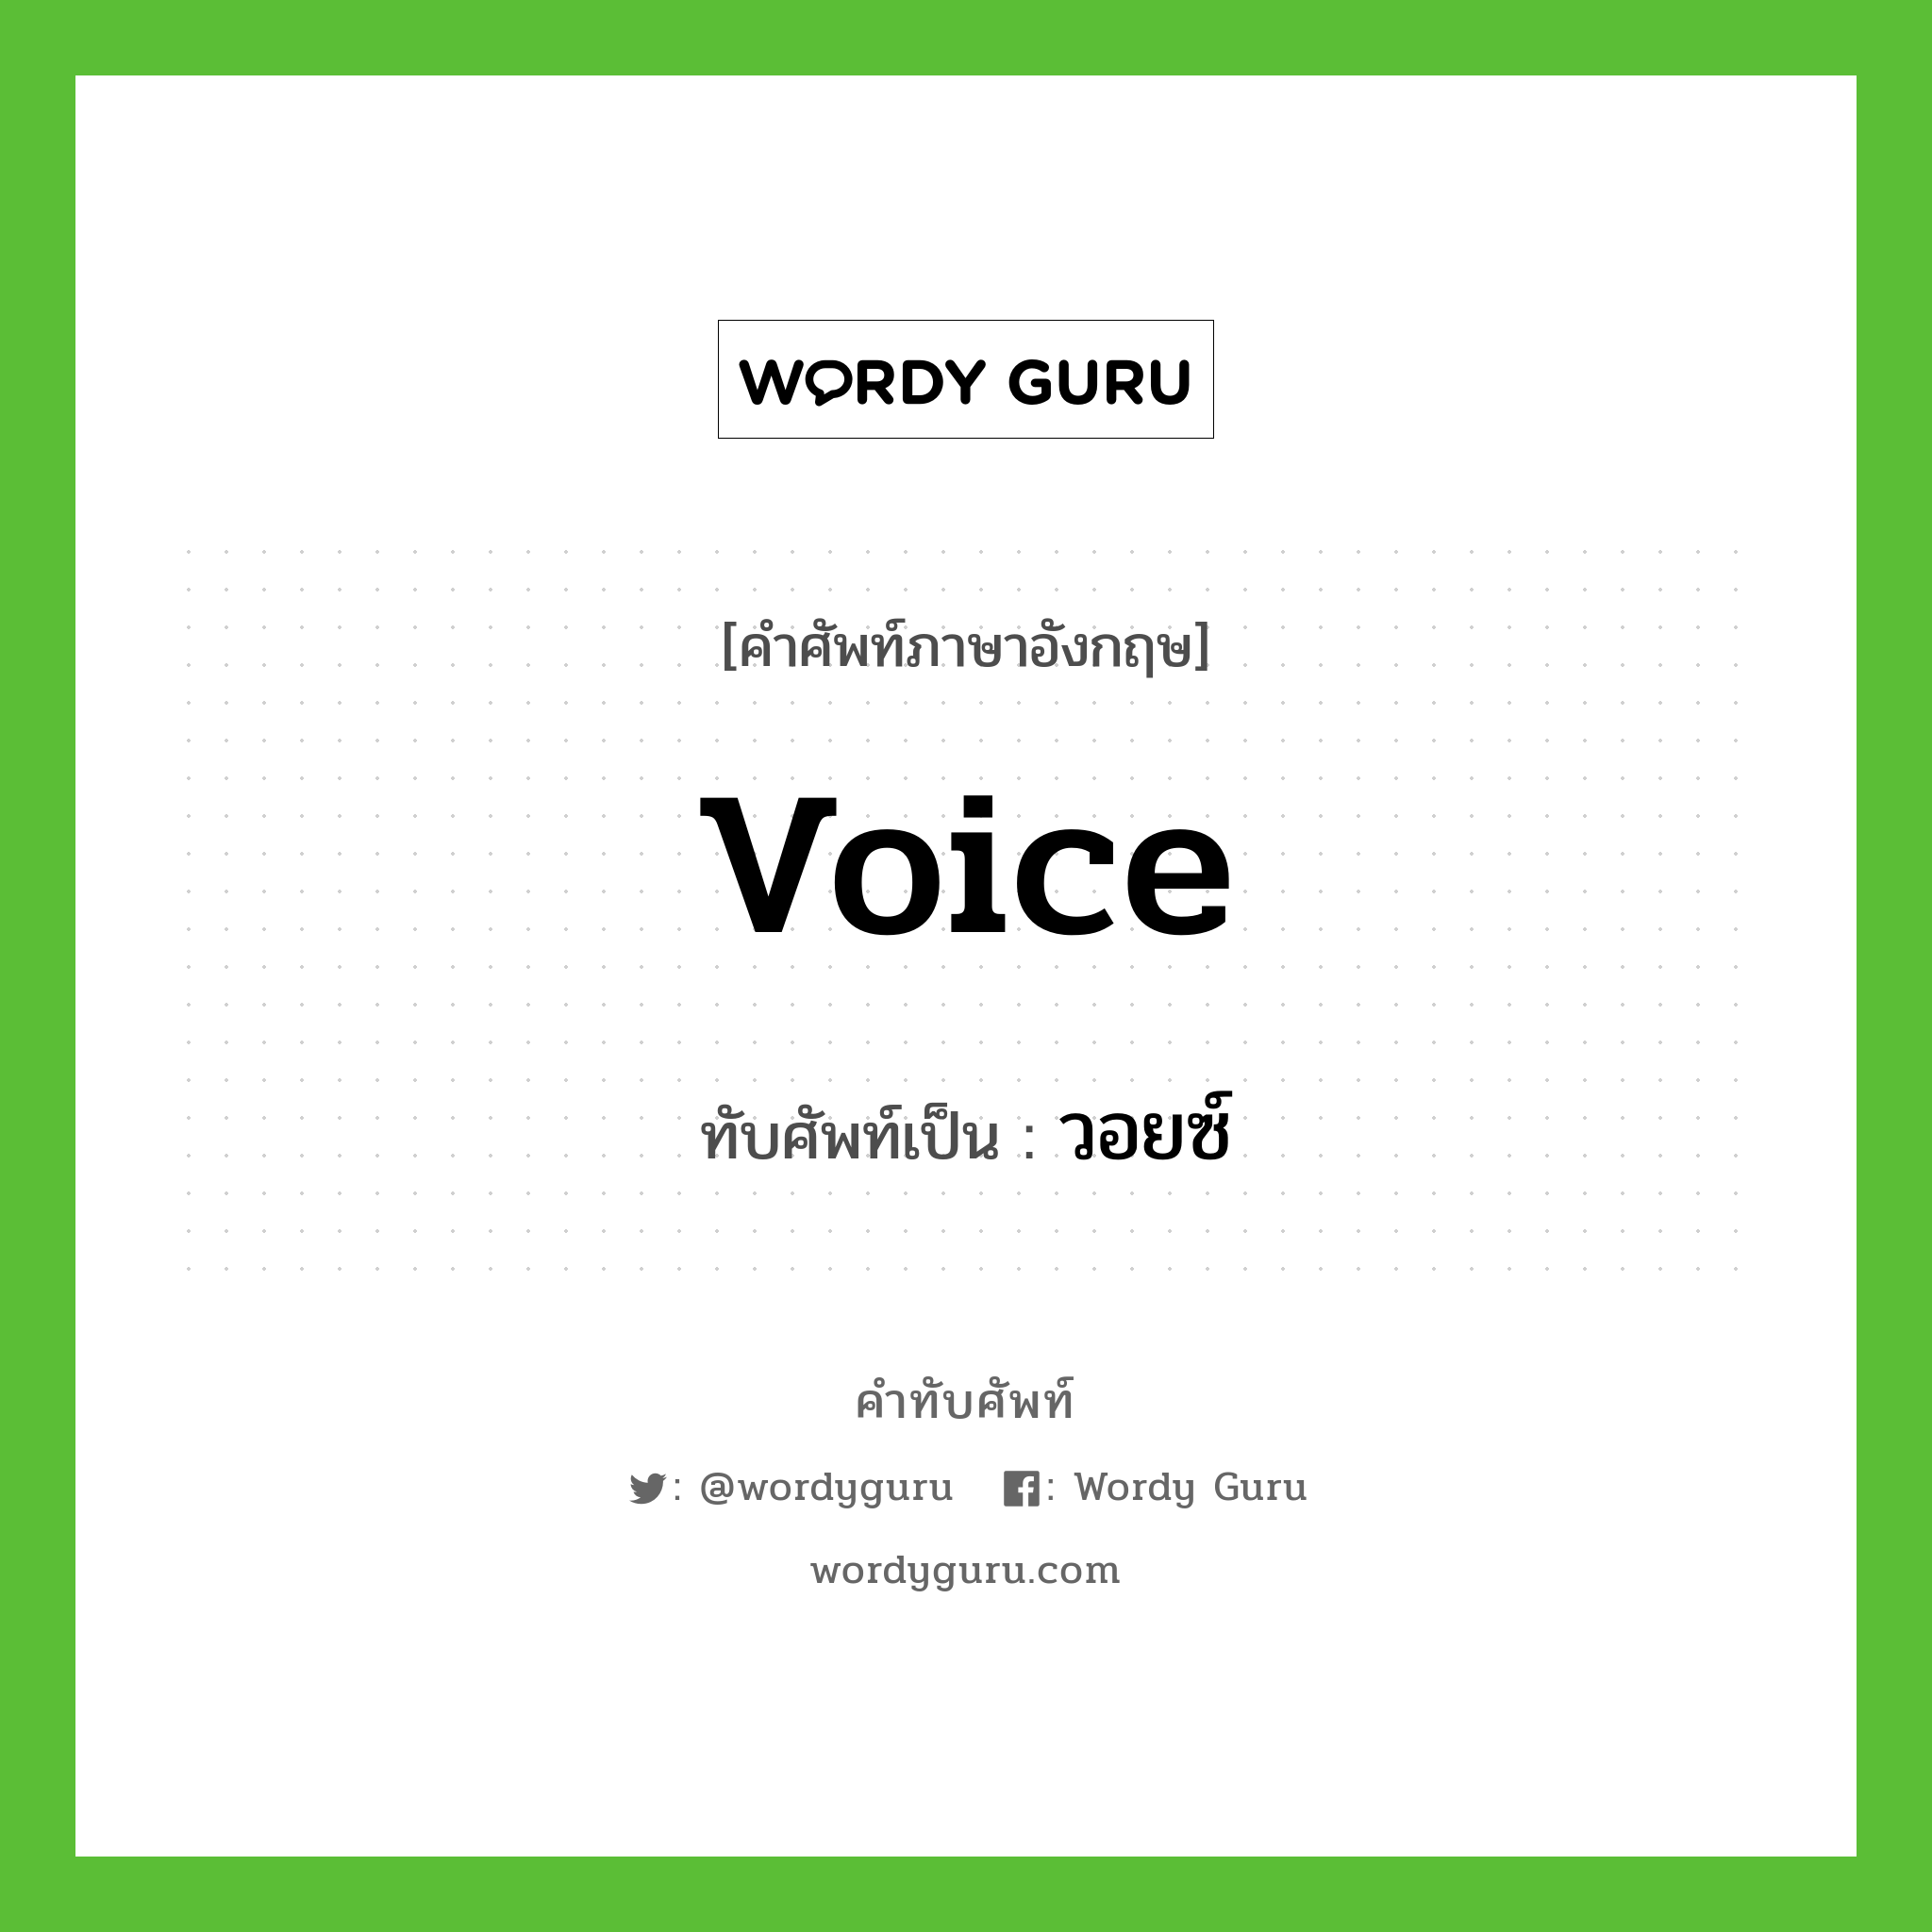 voice เขียนเป็นคำไทยว่าอะไร?, คำศัพท์ภาษาอังกฤษ voice ทับศัพท์เป็น วอยซ์